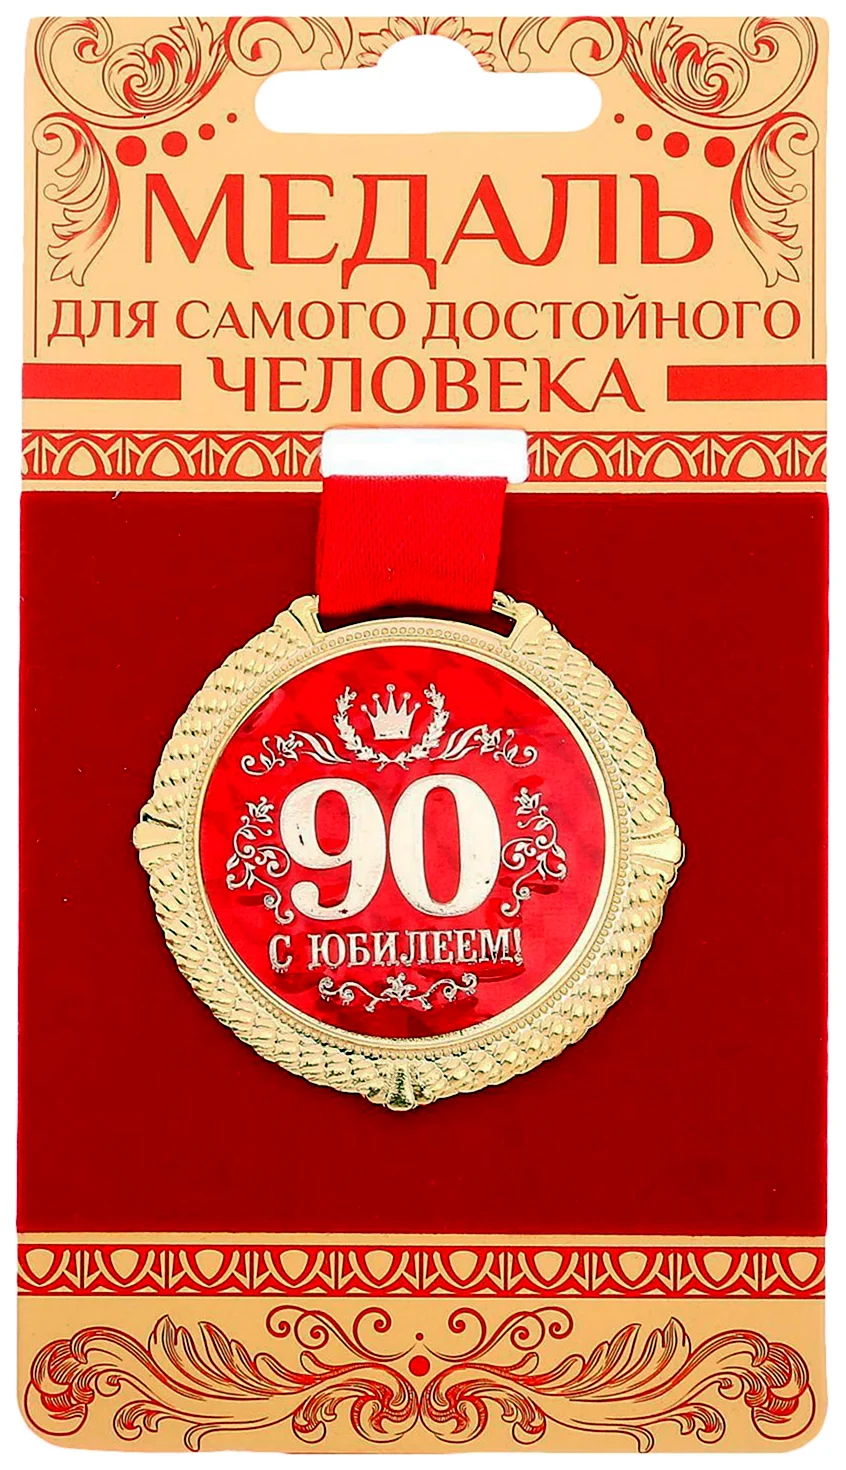 Медаль с юбилеем 80 лет. Открытка с юбилеем. Поздравление с юбилеем